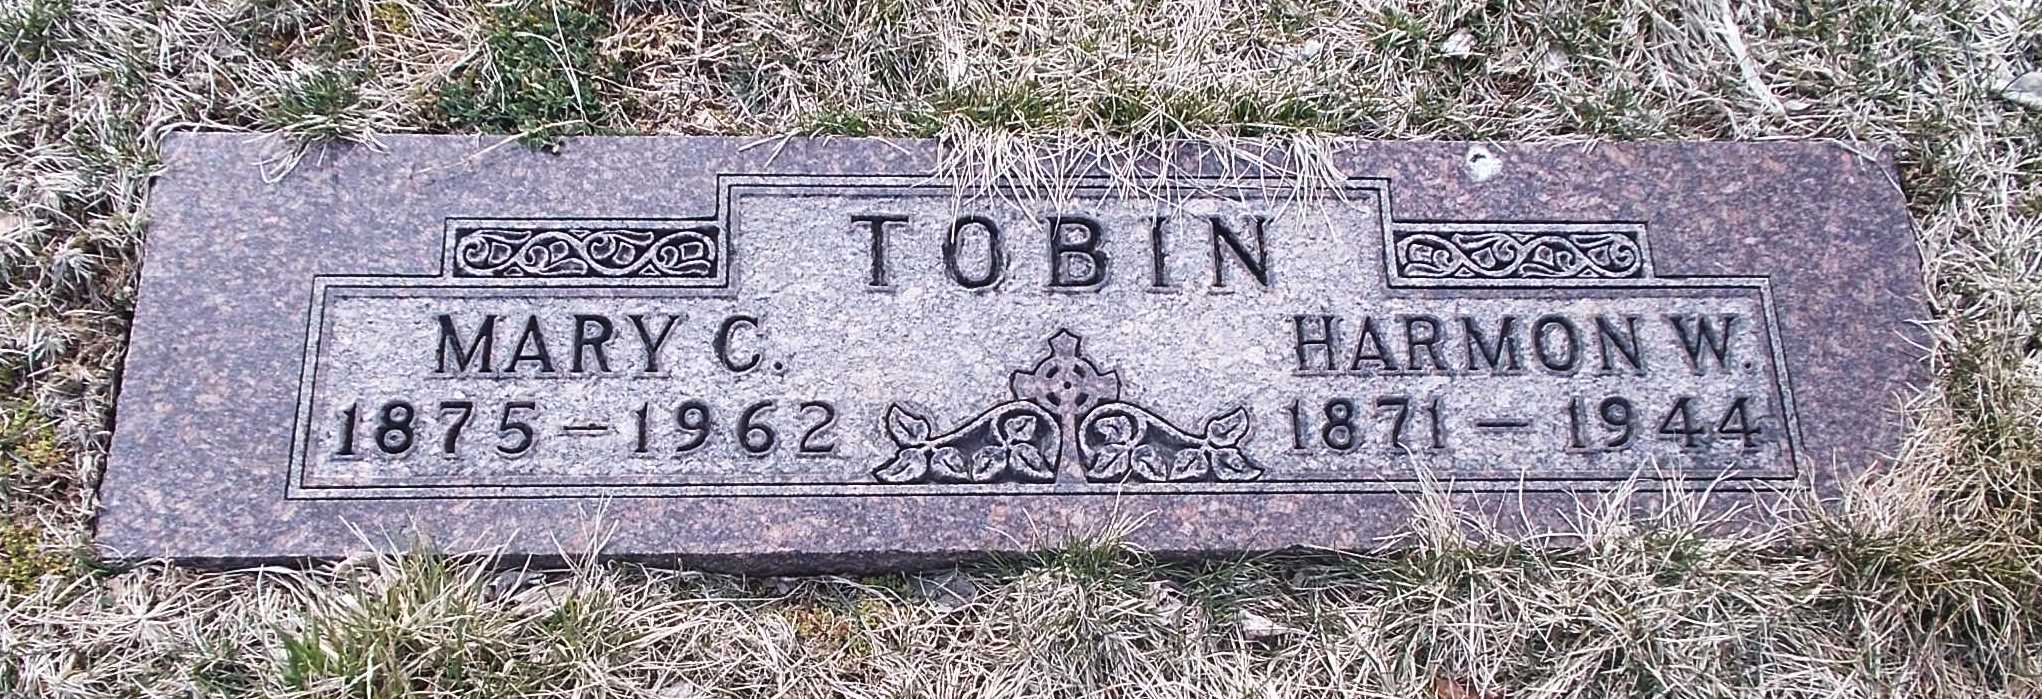 Mary C Tobin